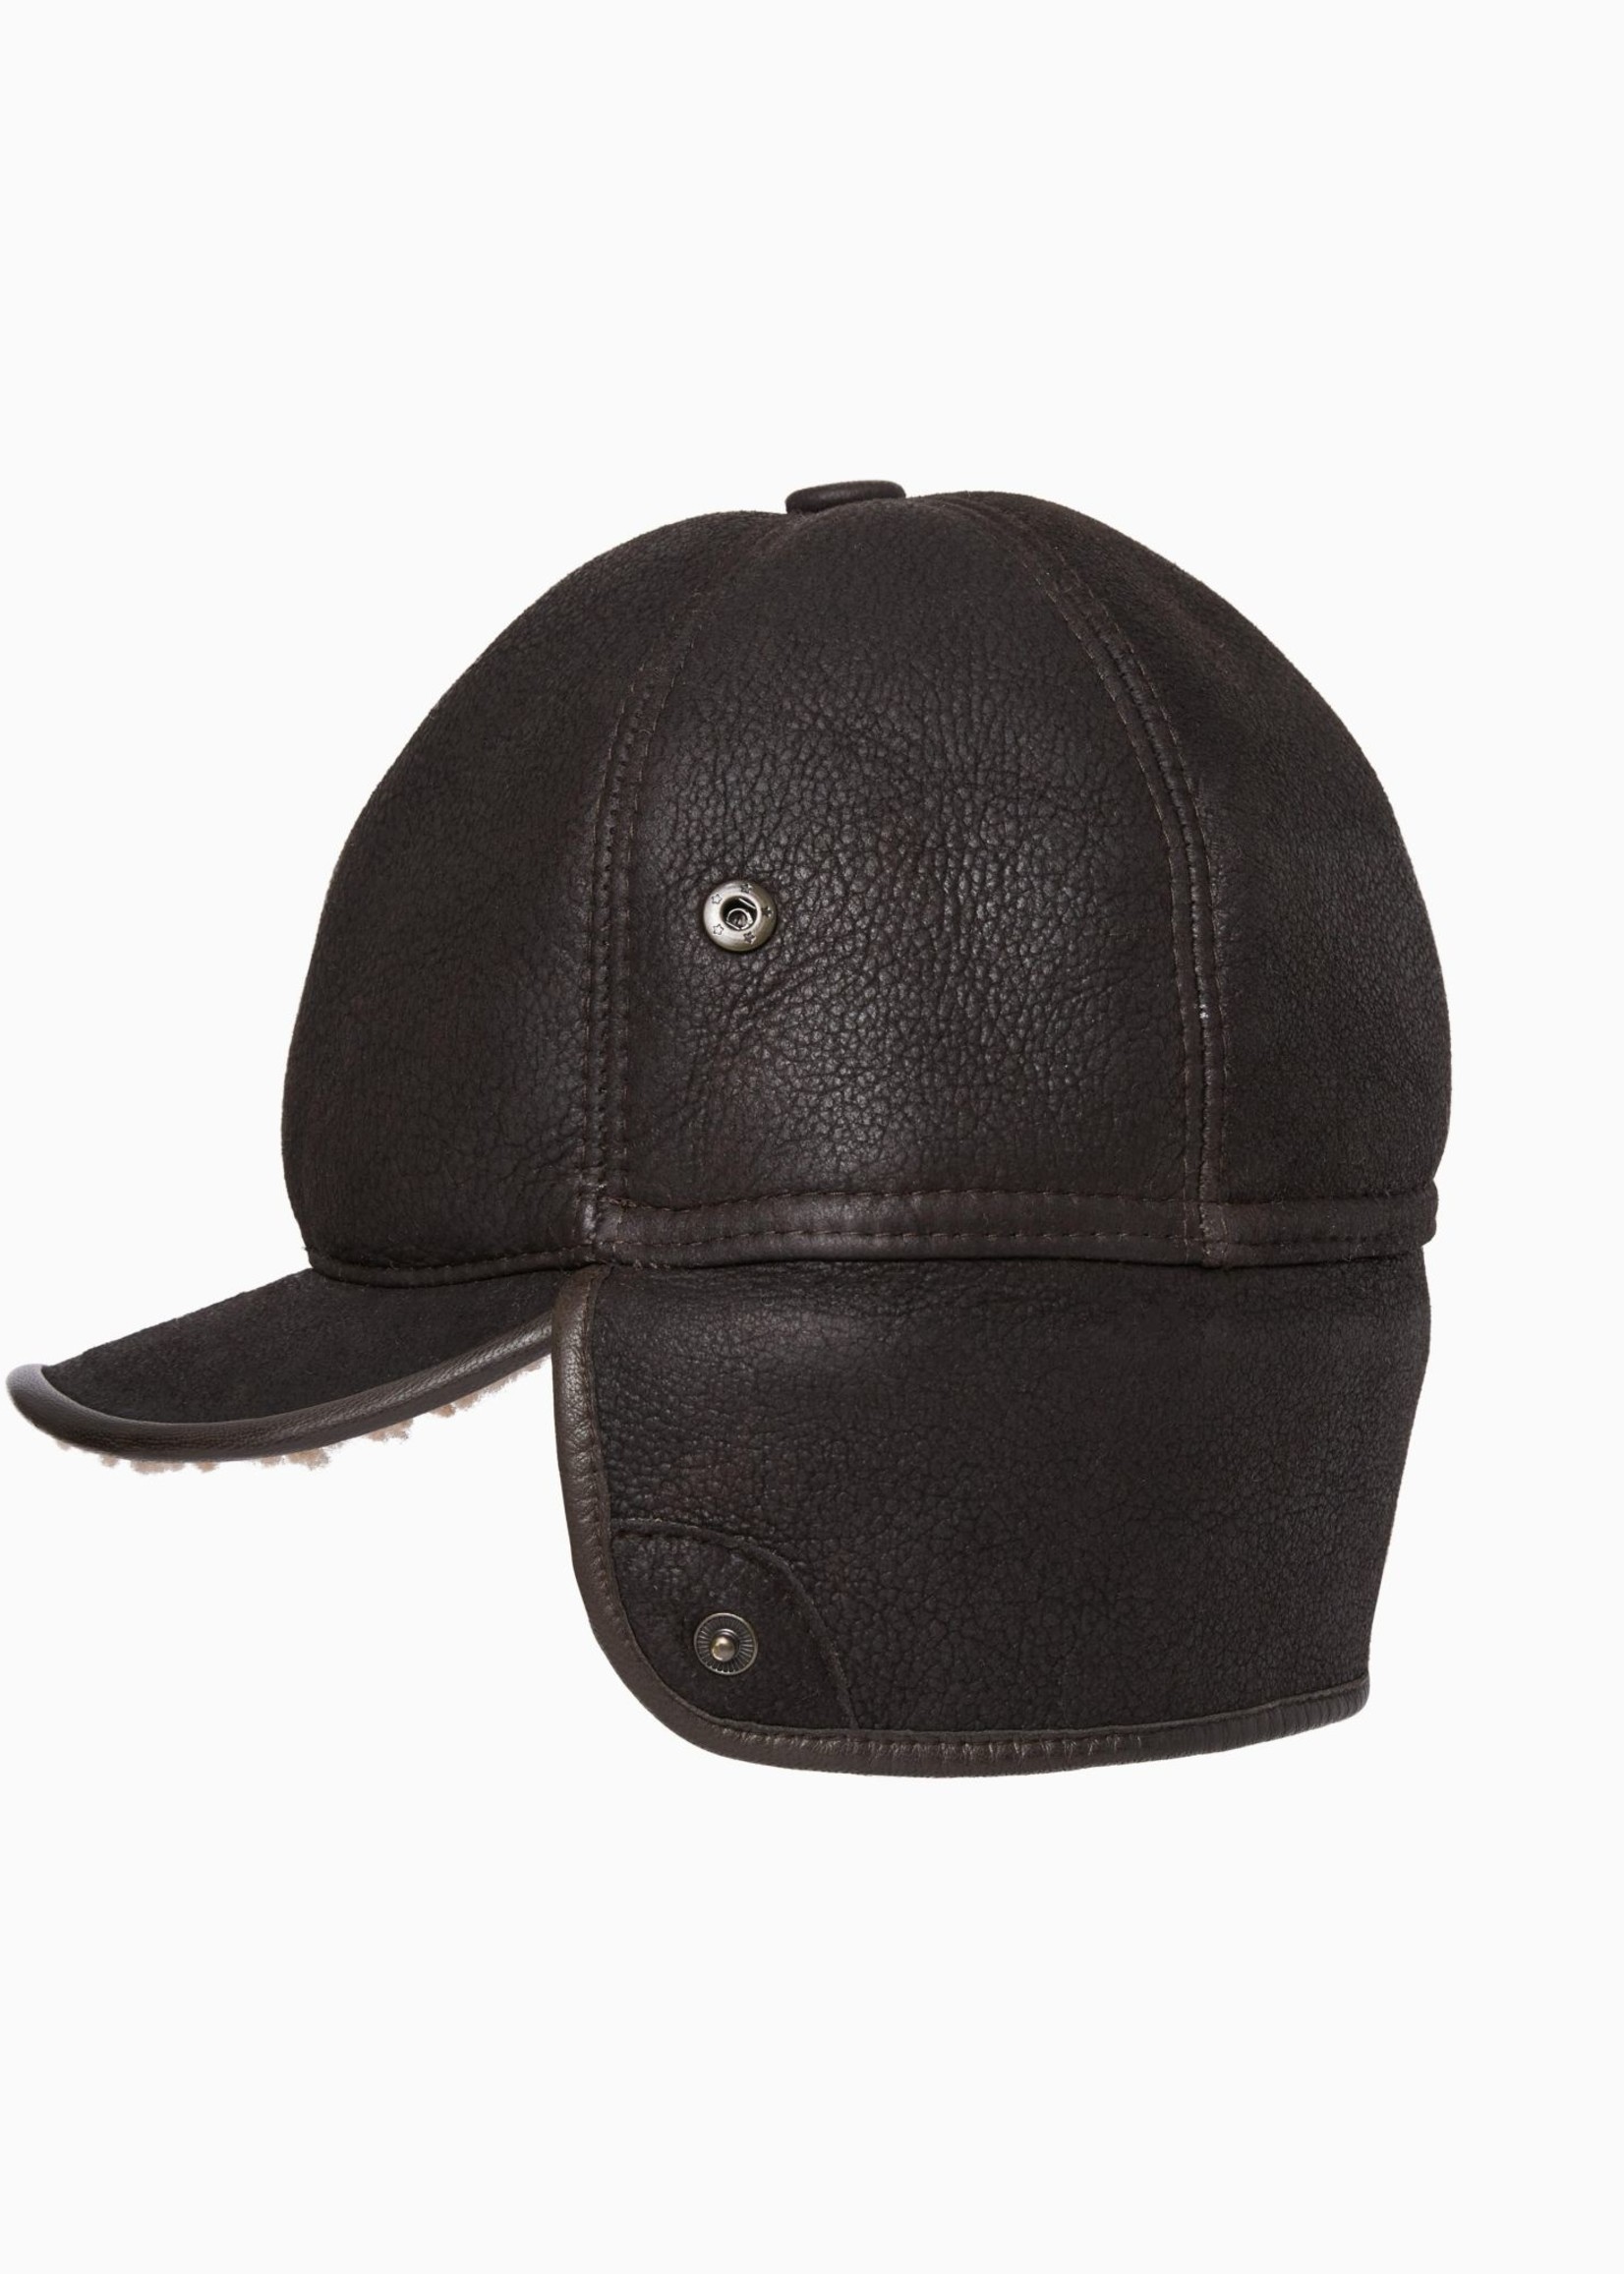 Filson Sheepskin Trapper Hat: BisonBrown